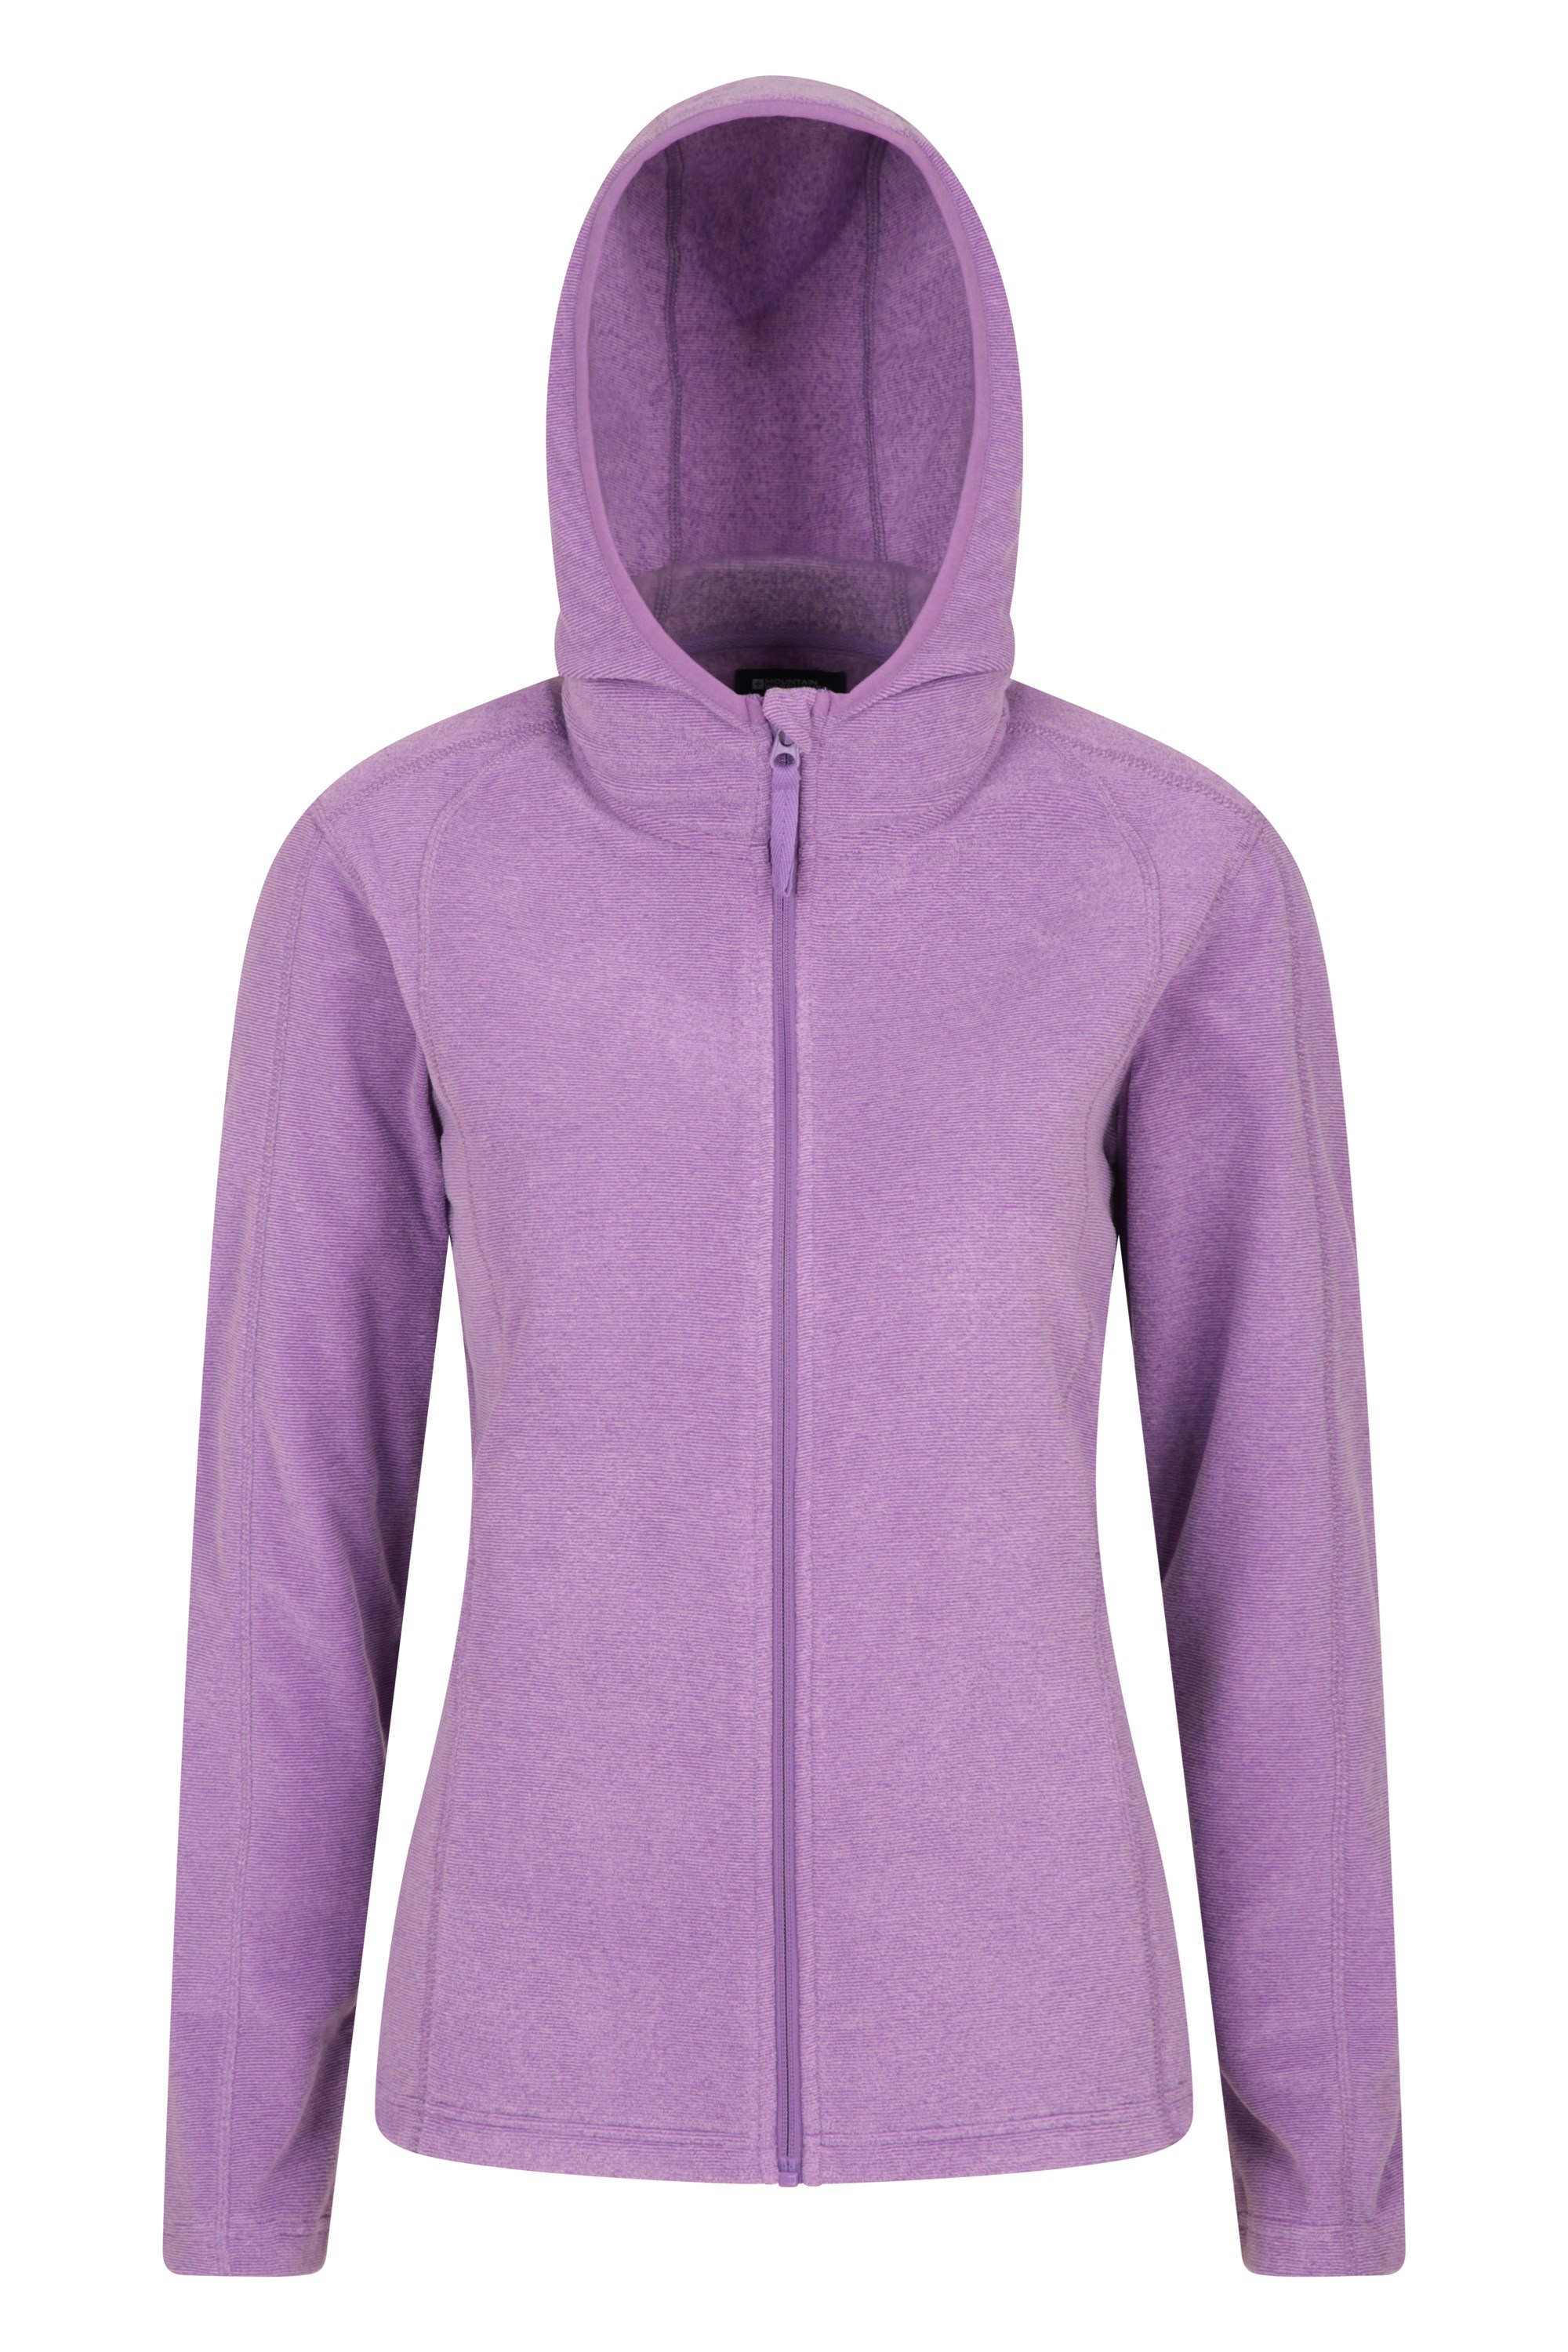 Hebridean Melange Womens Fleece - Purple